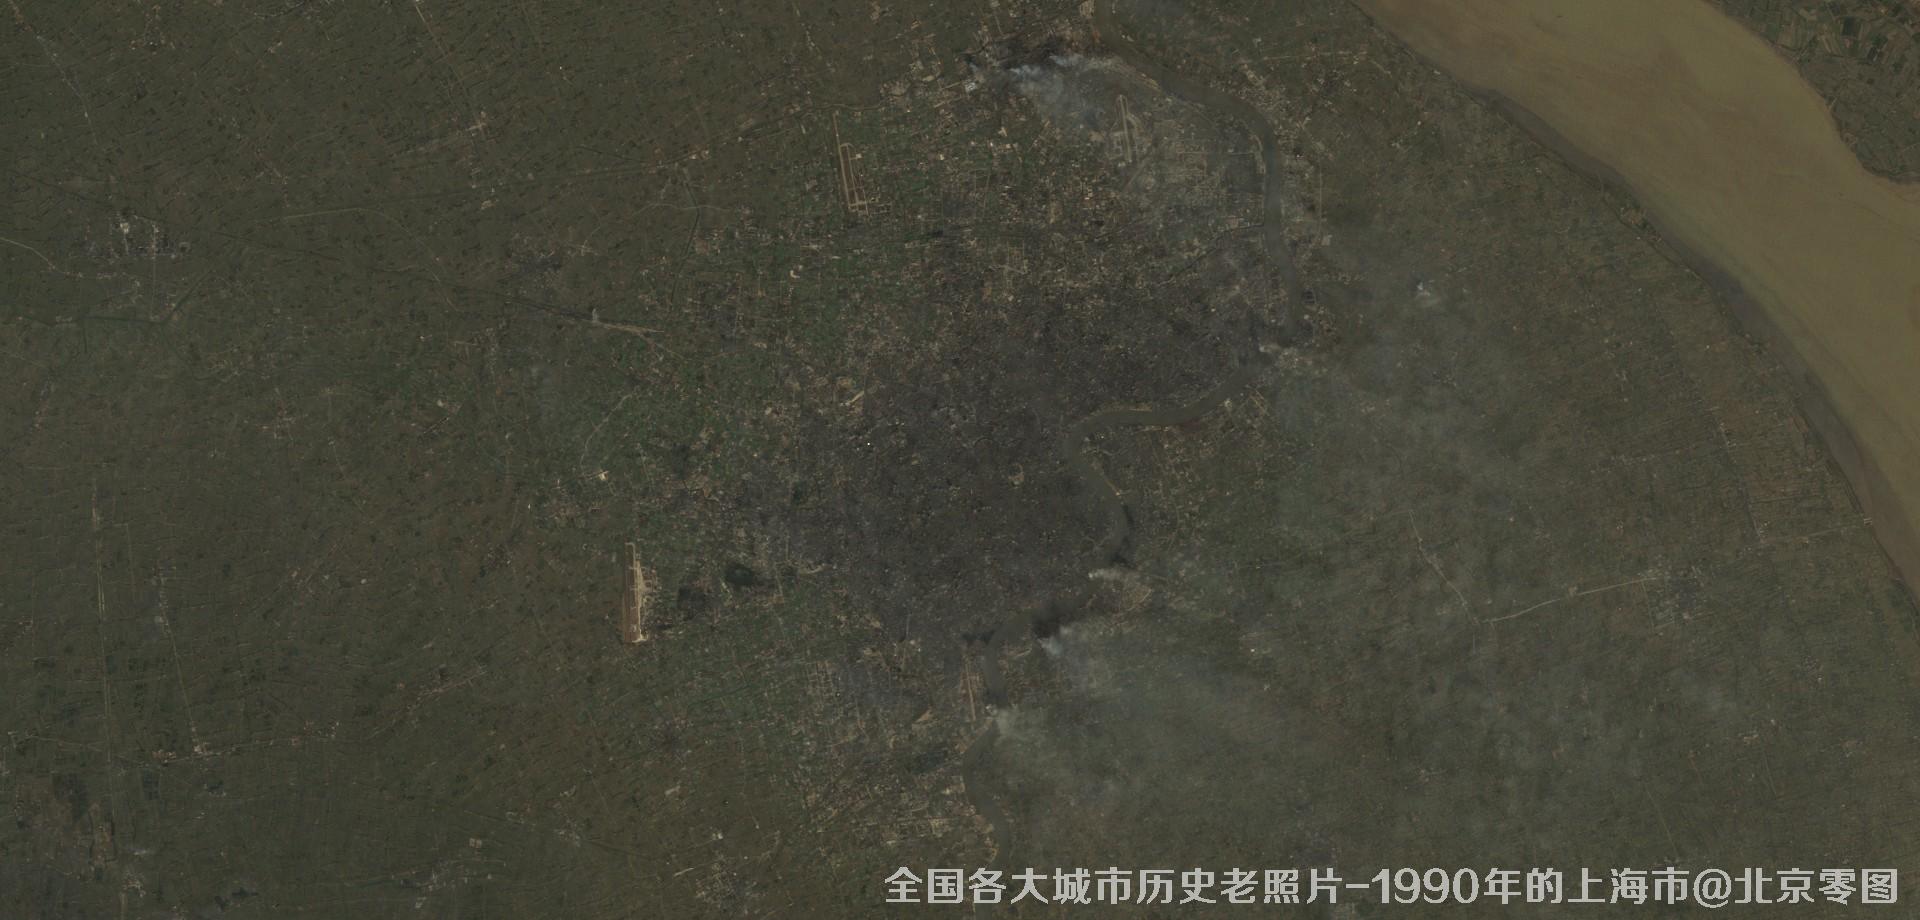 美国Landsat卫星拍摄的1990年的上海市历史卫星影像图